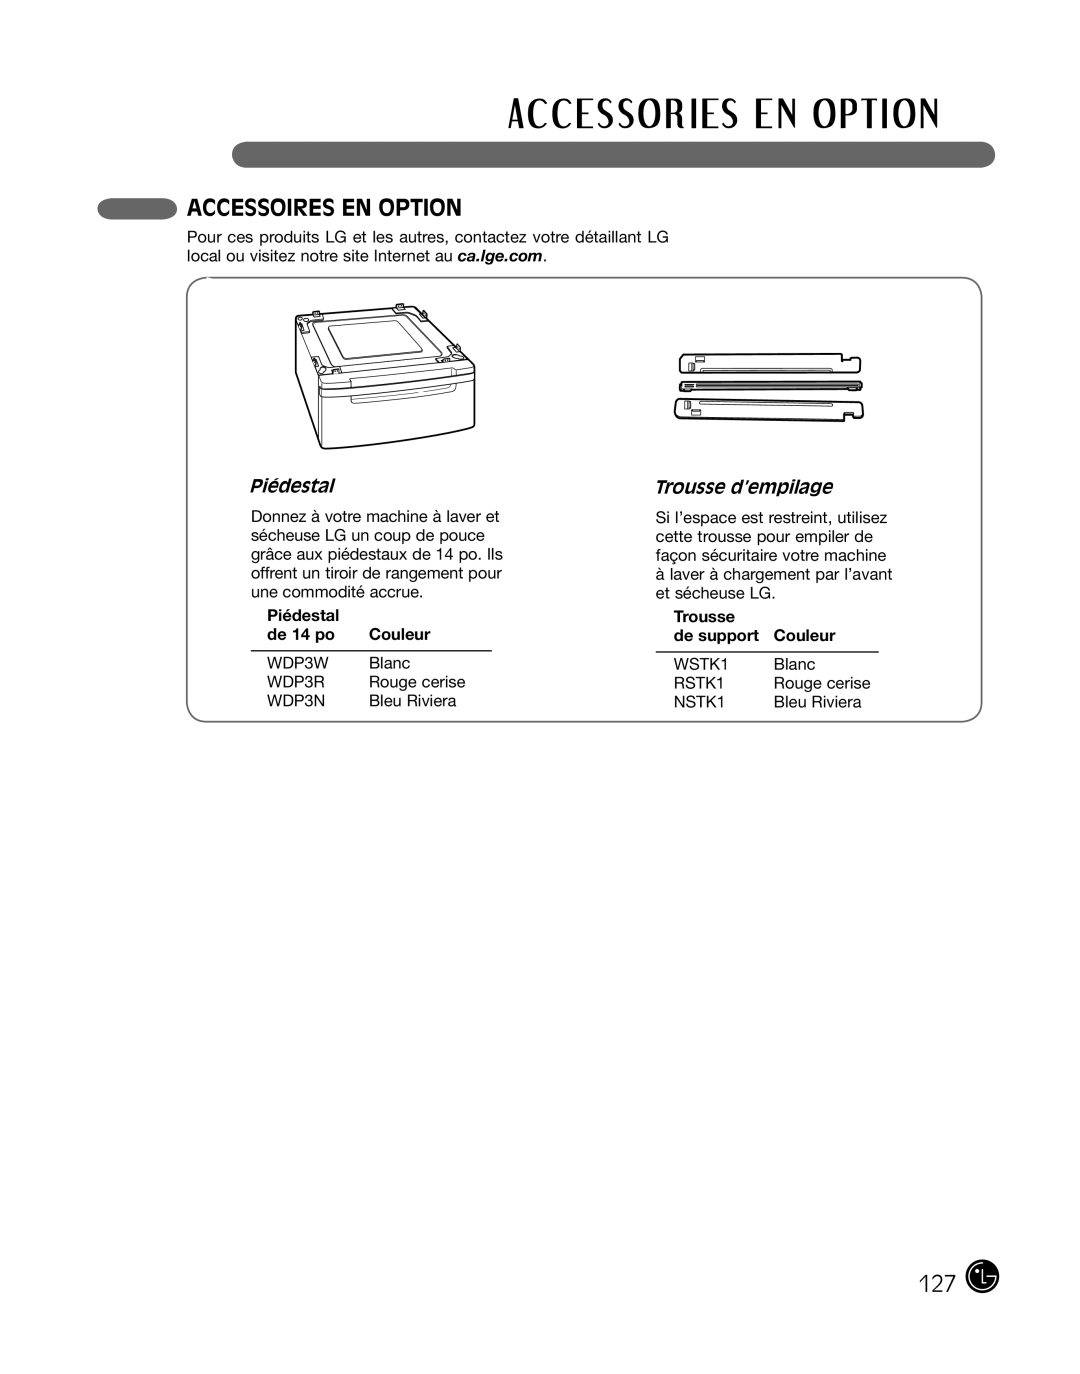 LG Electronics P154 manual Accessoires En Option, Piédestal, Trousse d’empilage, de 14 po, Trousse de support Couleur 